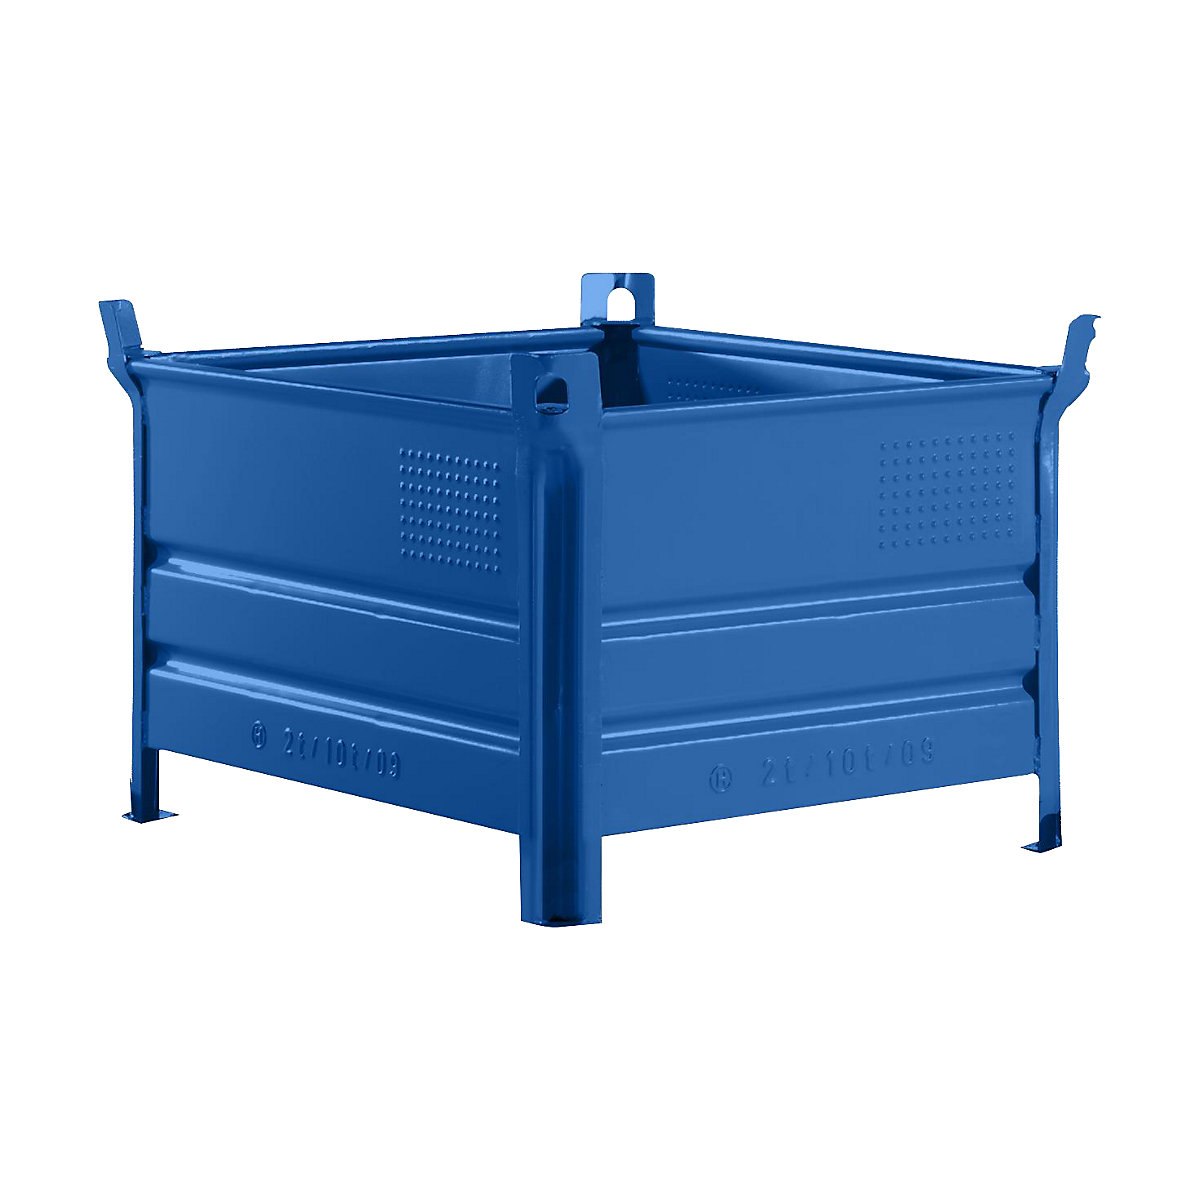 Pojemnik do ustawiania w stos z pełnymi ściankami – Heson, szer. x dł. 800 x 1000 mm, nośność 1000 kg, niebieski, od 10 szt.-7